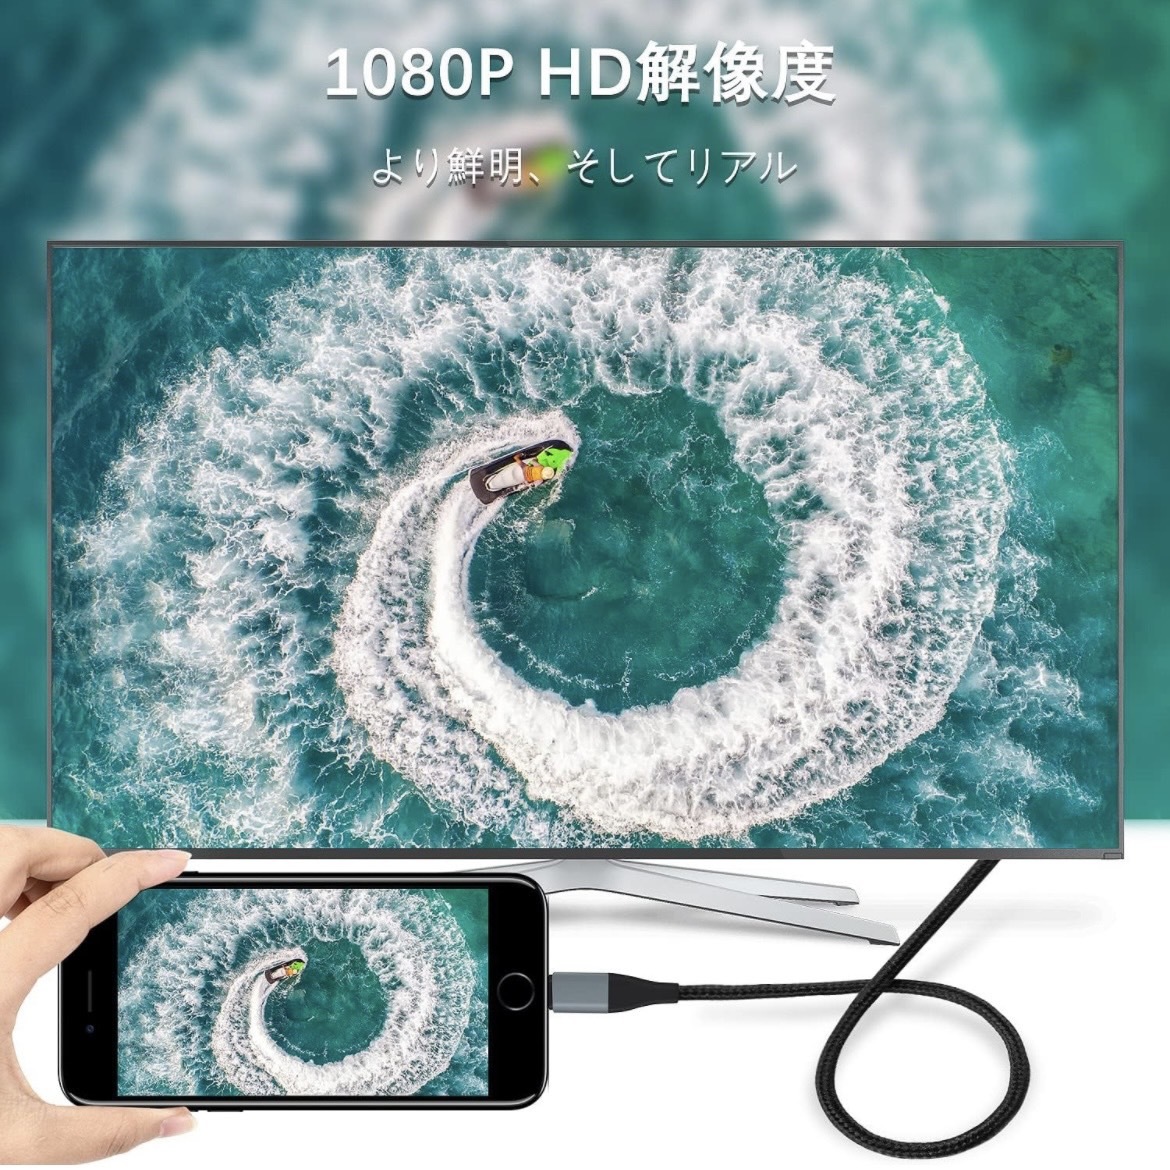 HDMIケーブル iPhone hdmi変換ケーブル2m Digital AV変換アダプタ iPhone/タブレットをテレビ出力 ライトニング HDMI接続ケーブル_画像4